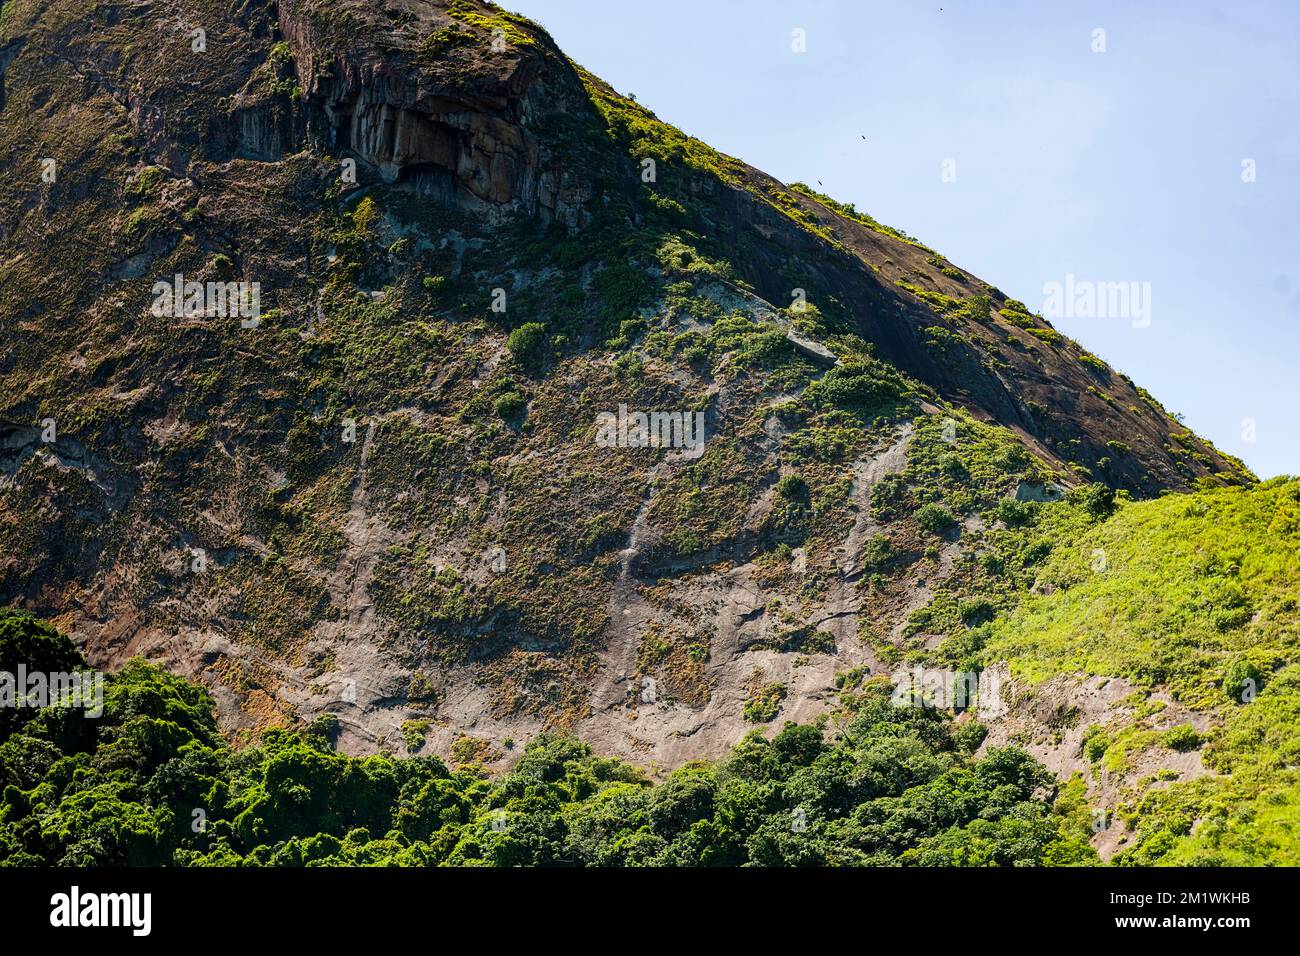 Felsformation in Rio de Janeiro mit Vegetation, blauem Himmel, wie ein Alligatorgesicht Stockfoto